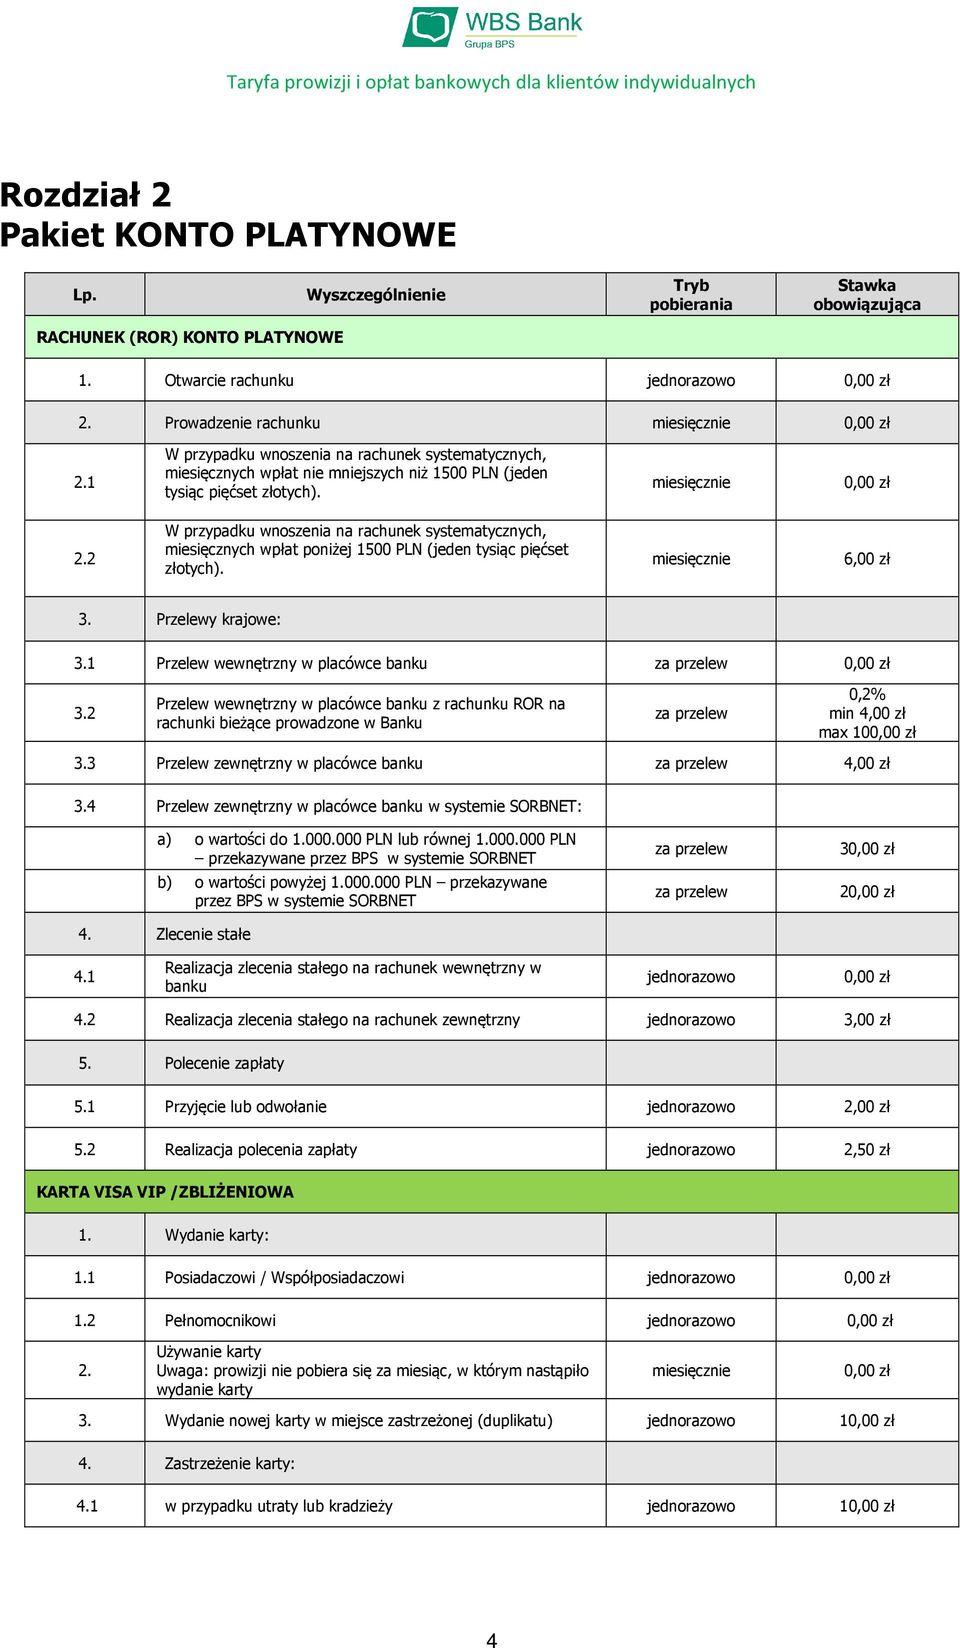 2 W przypadku wnoszenia na rachunek systematycznych, miesięcznych wpłat poniżej 1500 PLN (jeden tysiąc pięćset złotych). 6,00 zł 3. Przelewy krajowe: 3.1 Przelew wewnętrzny w placówce banku 3.